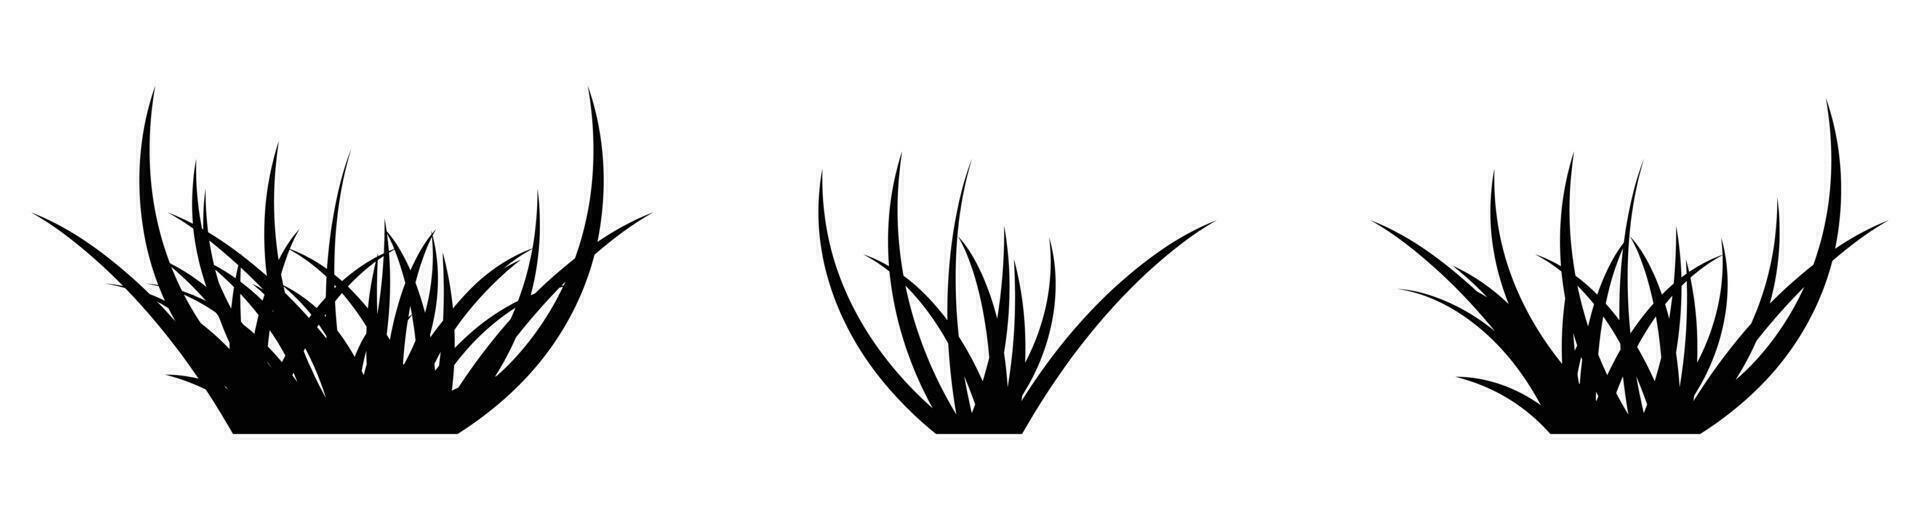 dessin animé silhouette herbe feuilles collection vecteur illustration isolé sur blanc